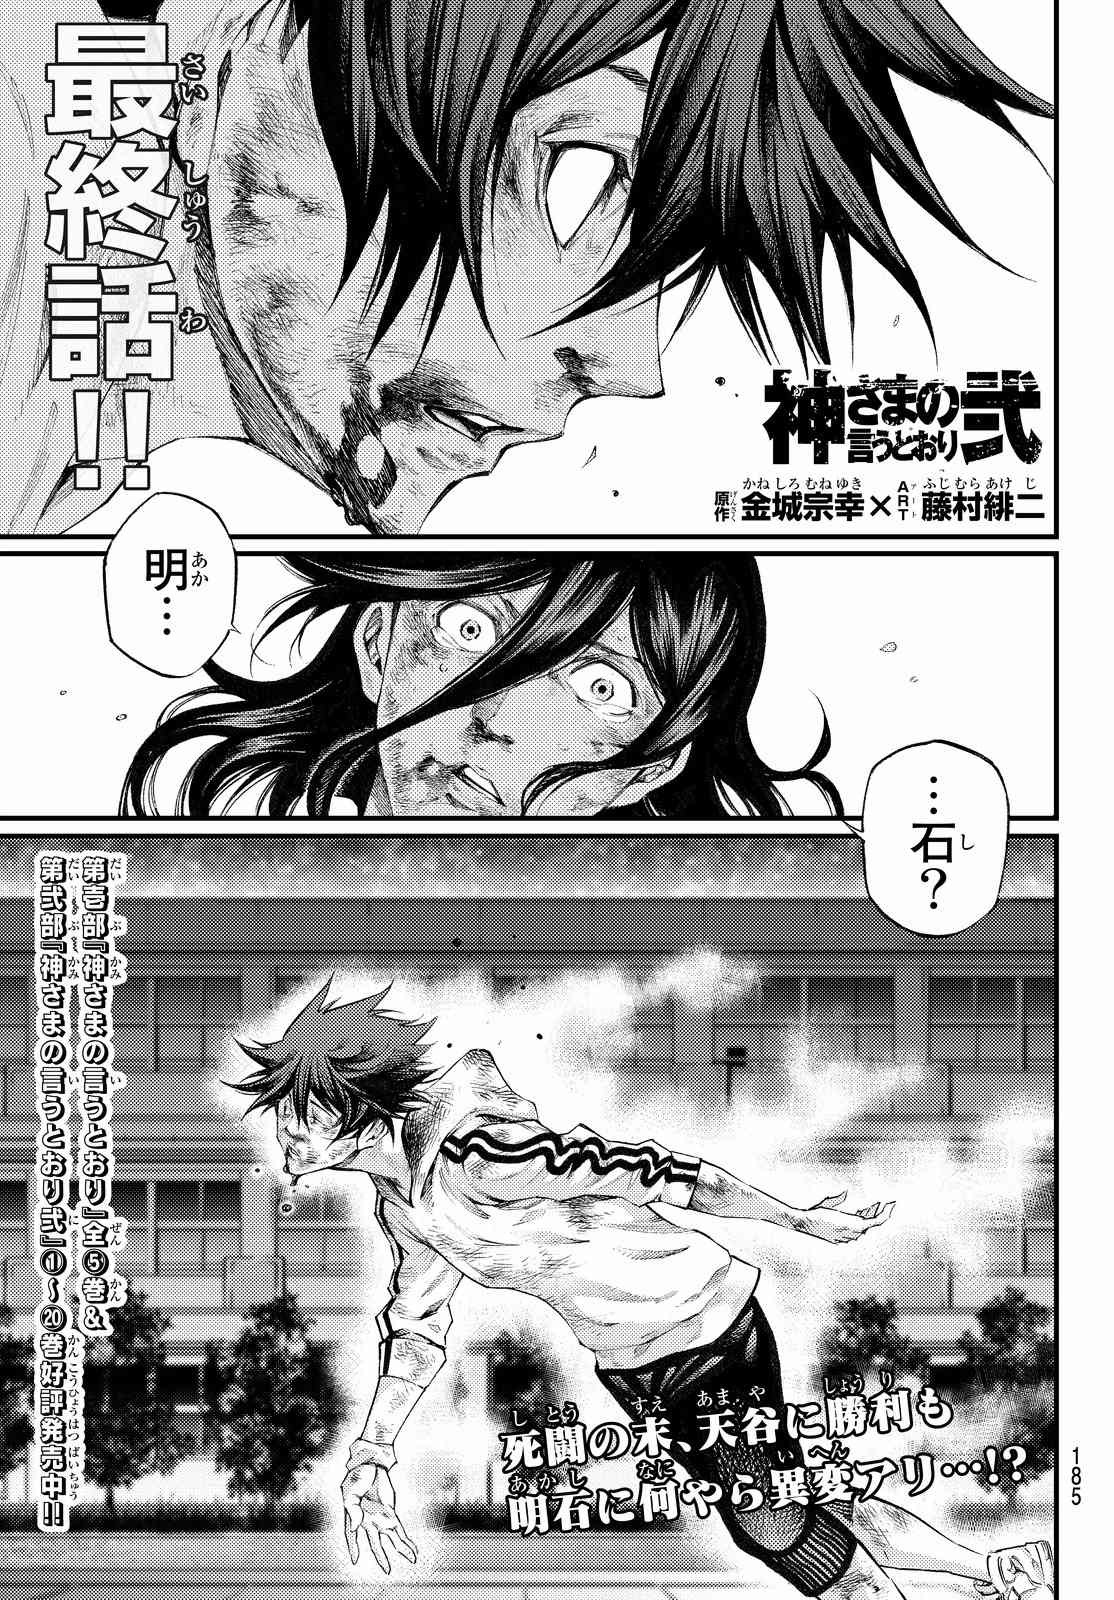 Kamisama_no_Ituori - Chapter Final - Page 1